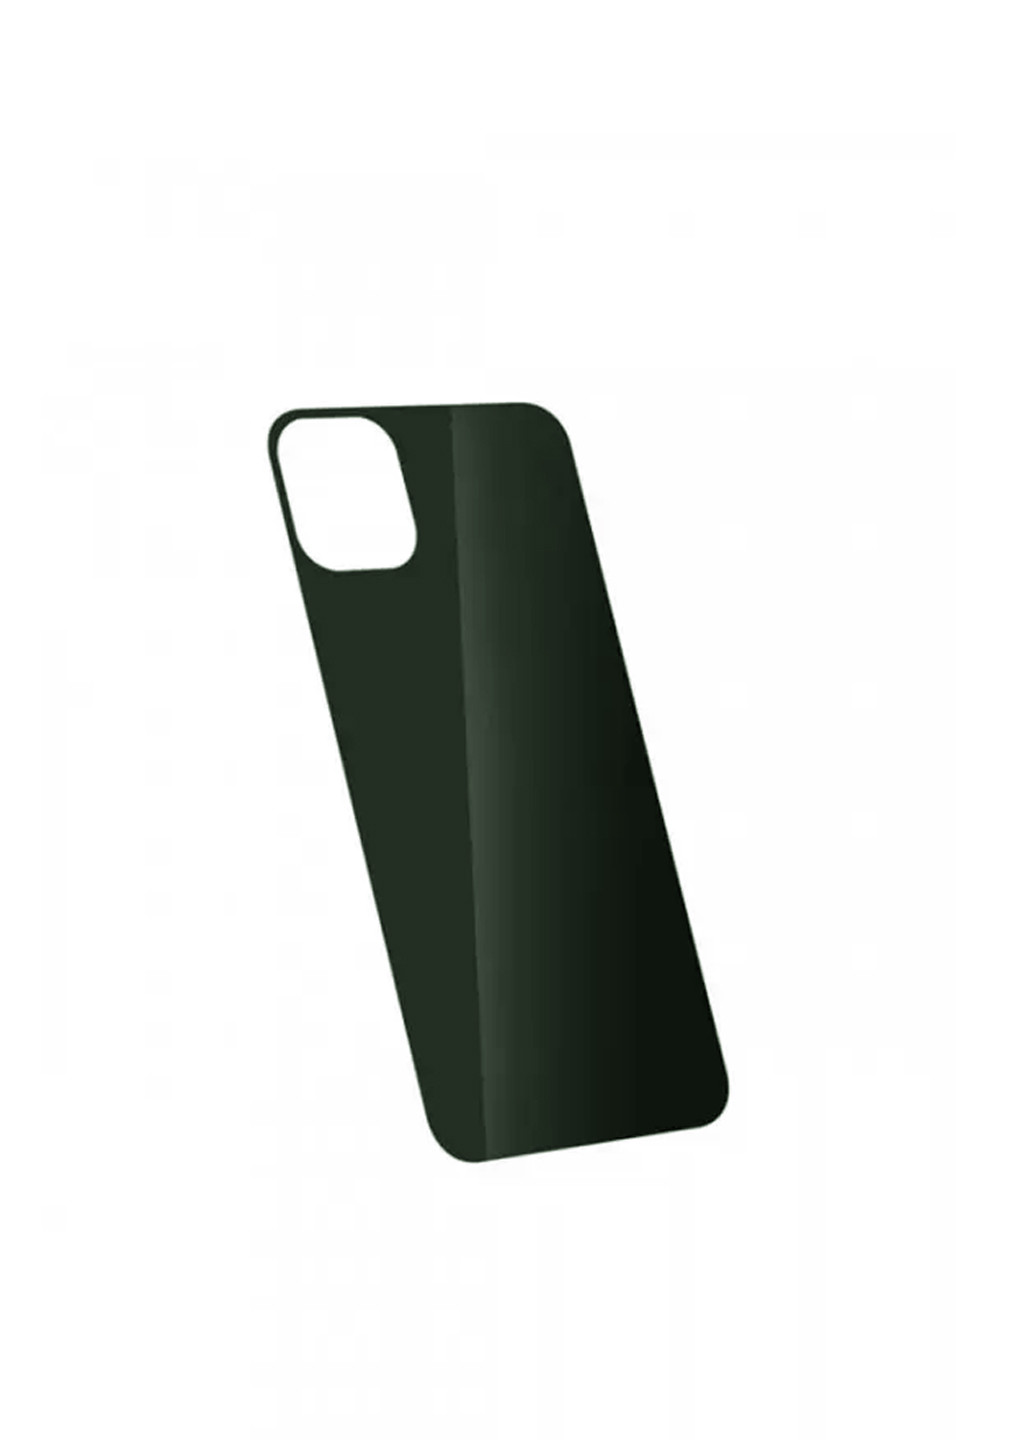 Стекло защитное на заднюю панель цветное глянцевое для iPhone 11 Dark Green CAA (220512948)